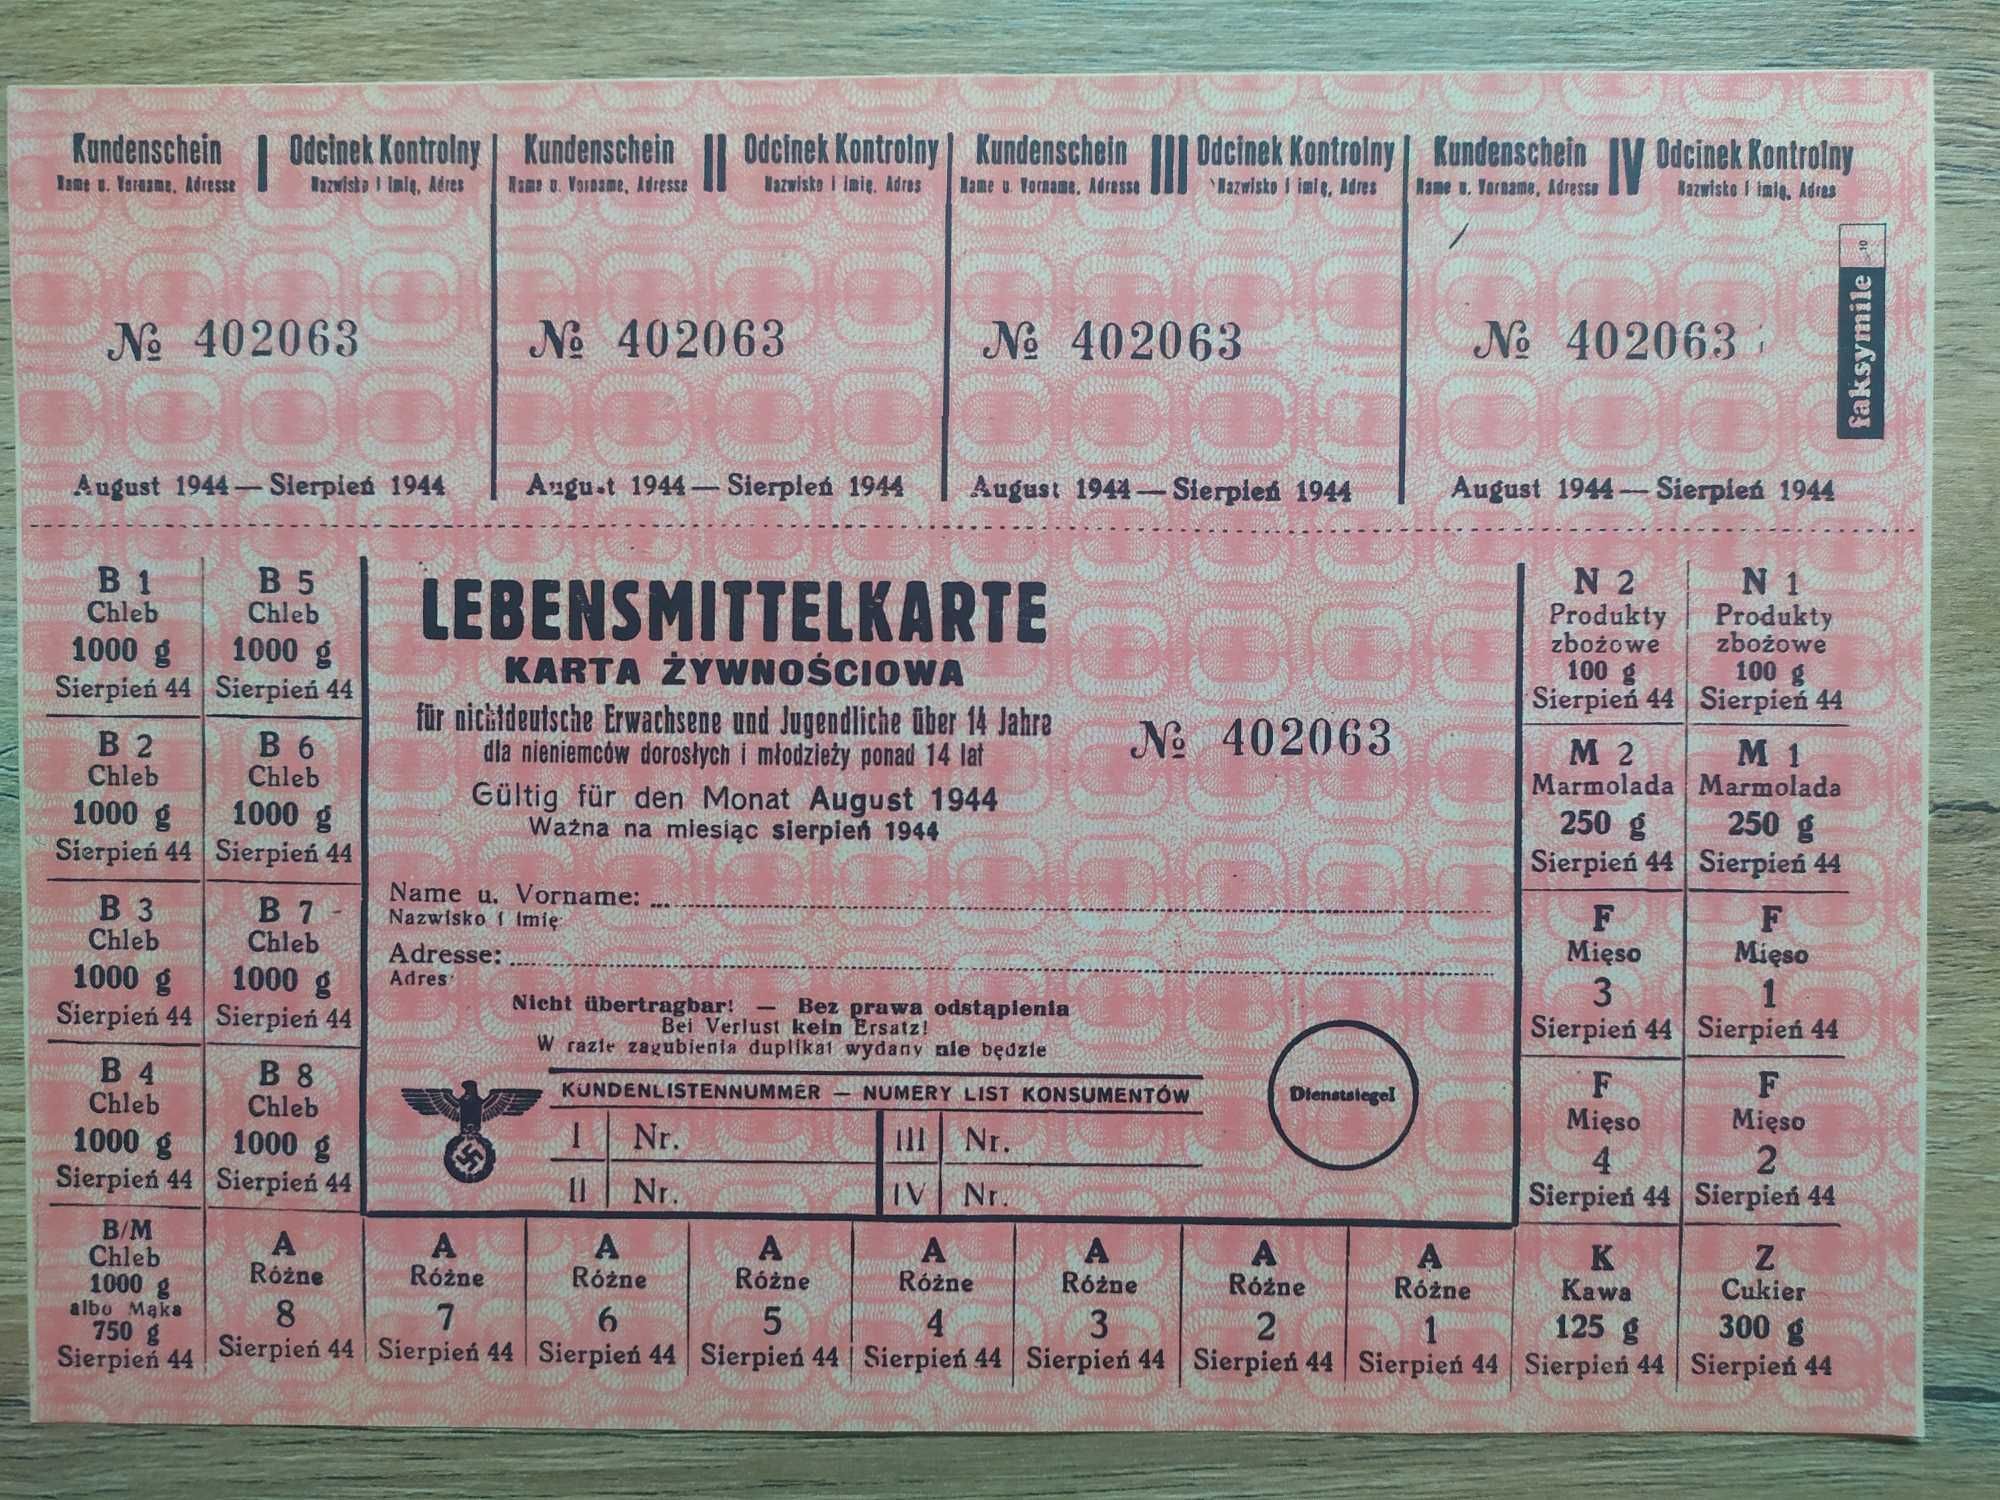 Karta żywnościowa - Lebensmittelkarte z sierpnia 1944. Faksymile